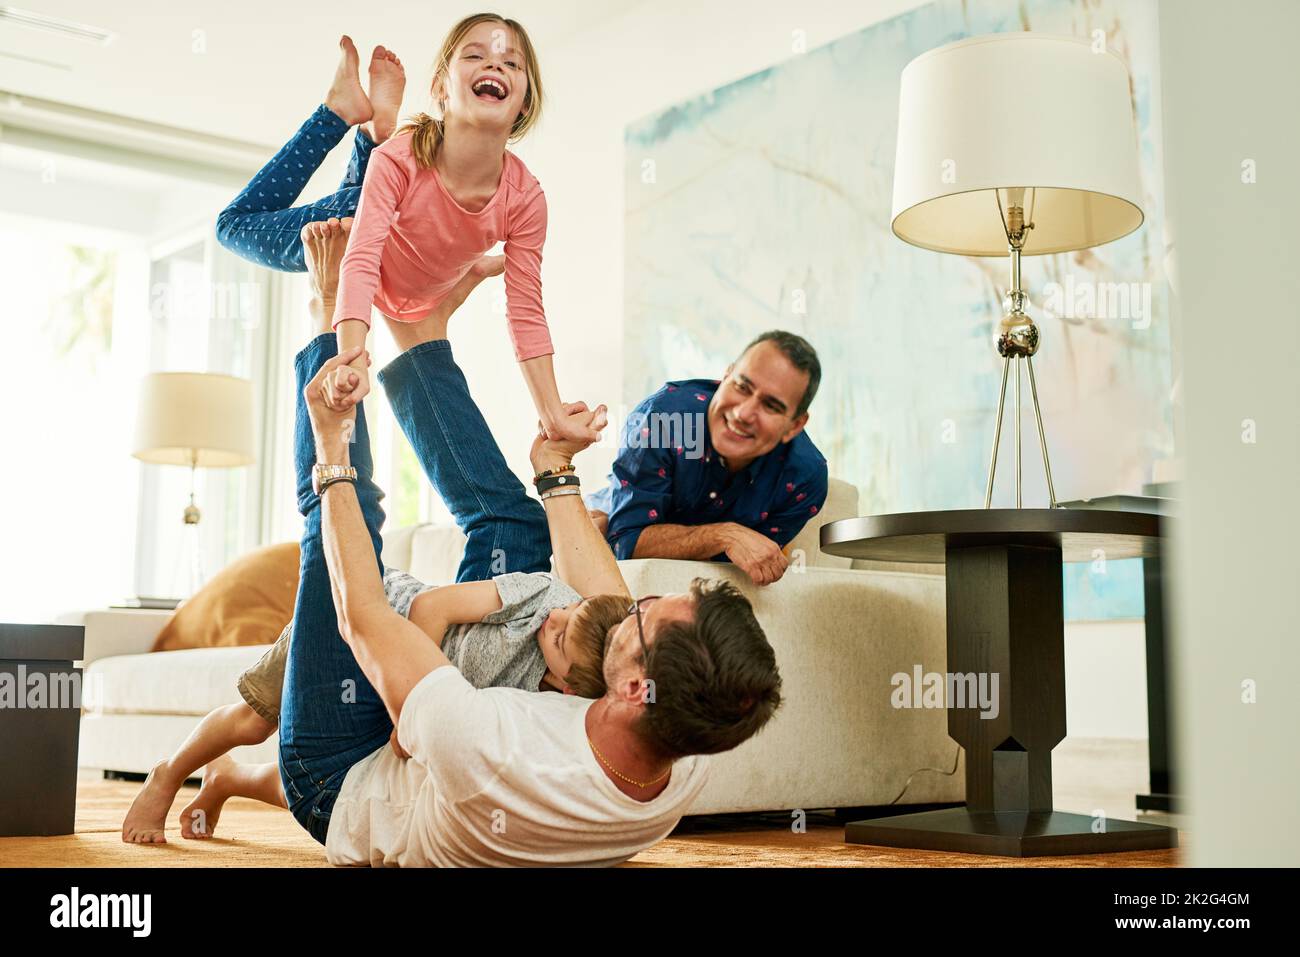 Plus haut, papa. Photo courte d'une adorable petite fille jouant avec son père à la maison. Banque D'Images